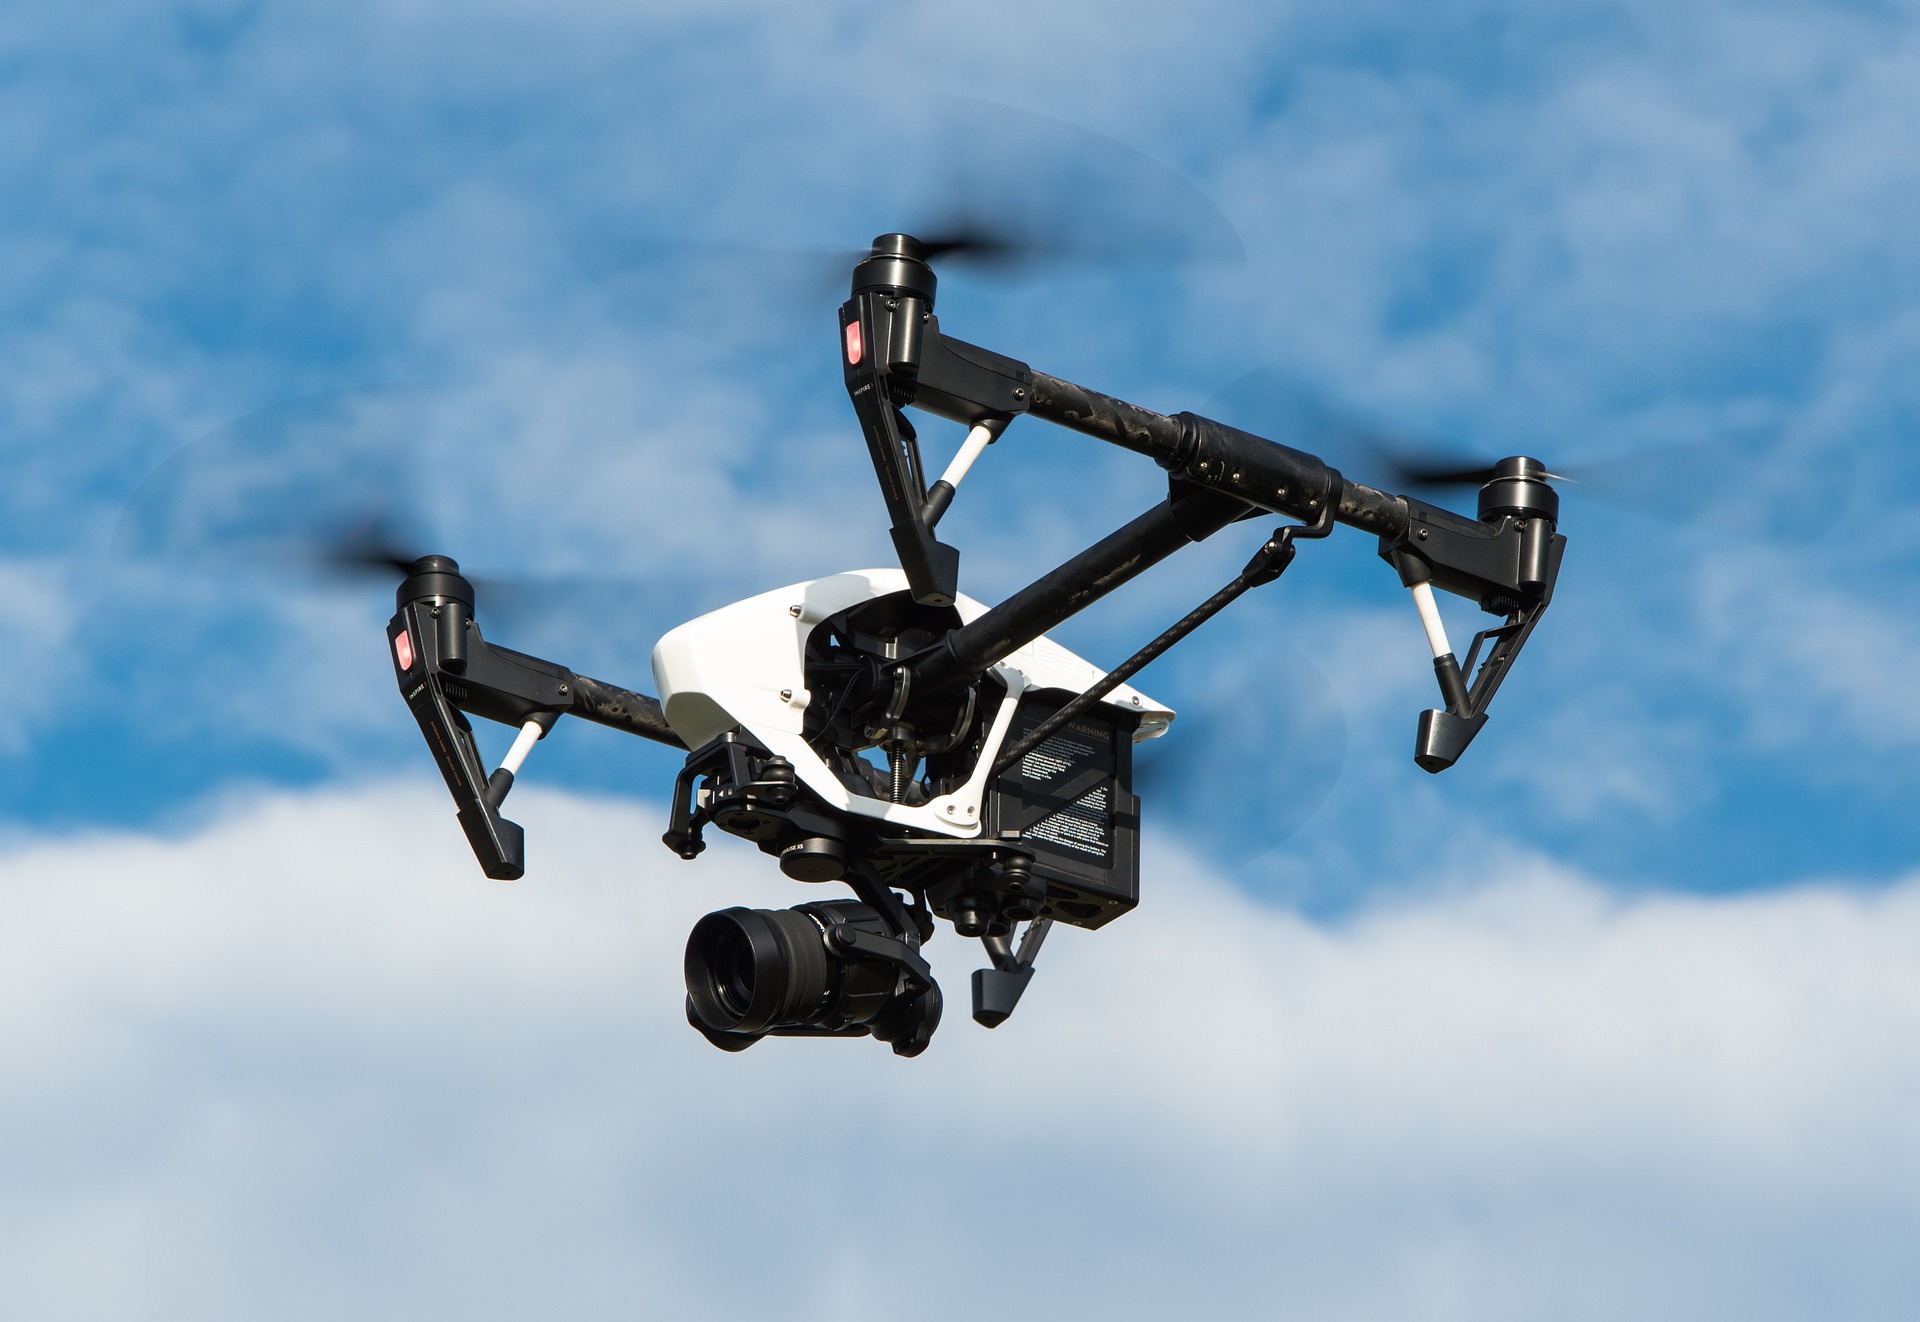 Μάστιγα η χρήση κινητού κατά την οδήγηση – Ποια χώρα επιστράτευσε drone για να πιάνει τους παραβάτες